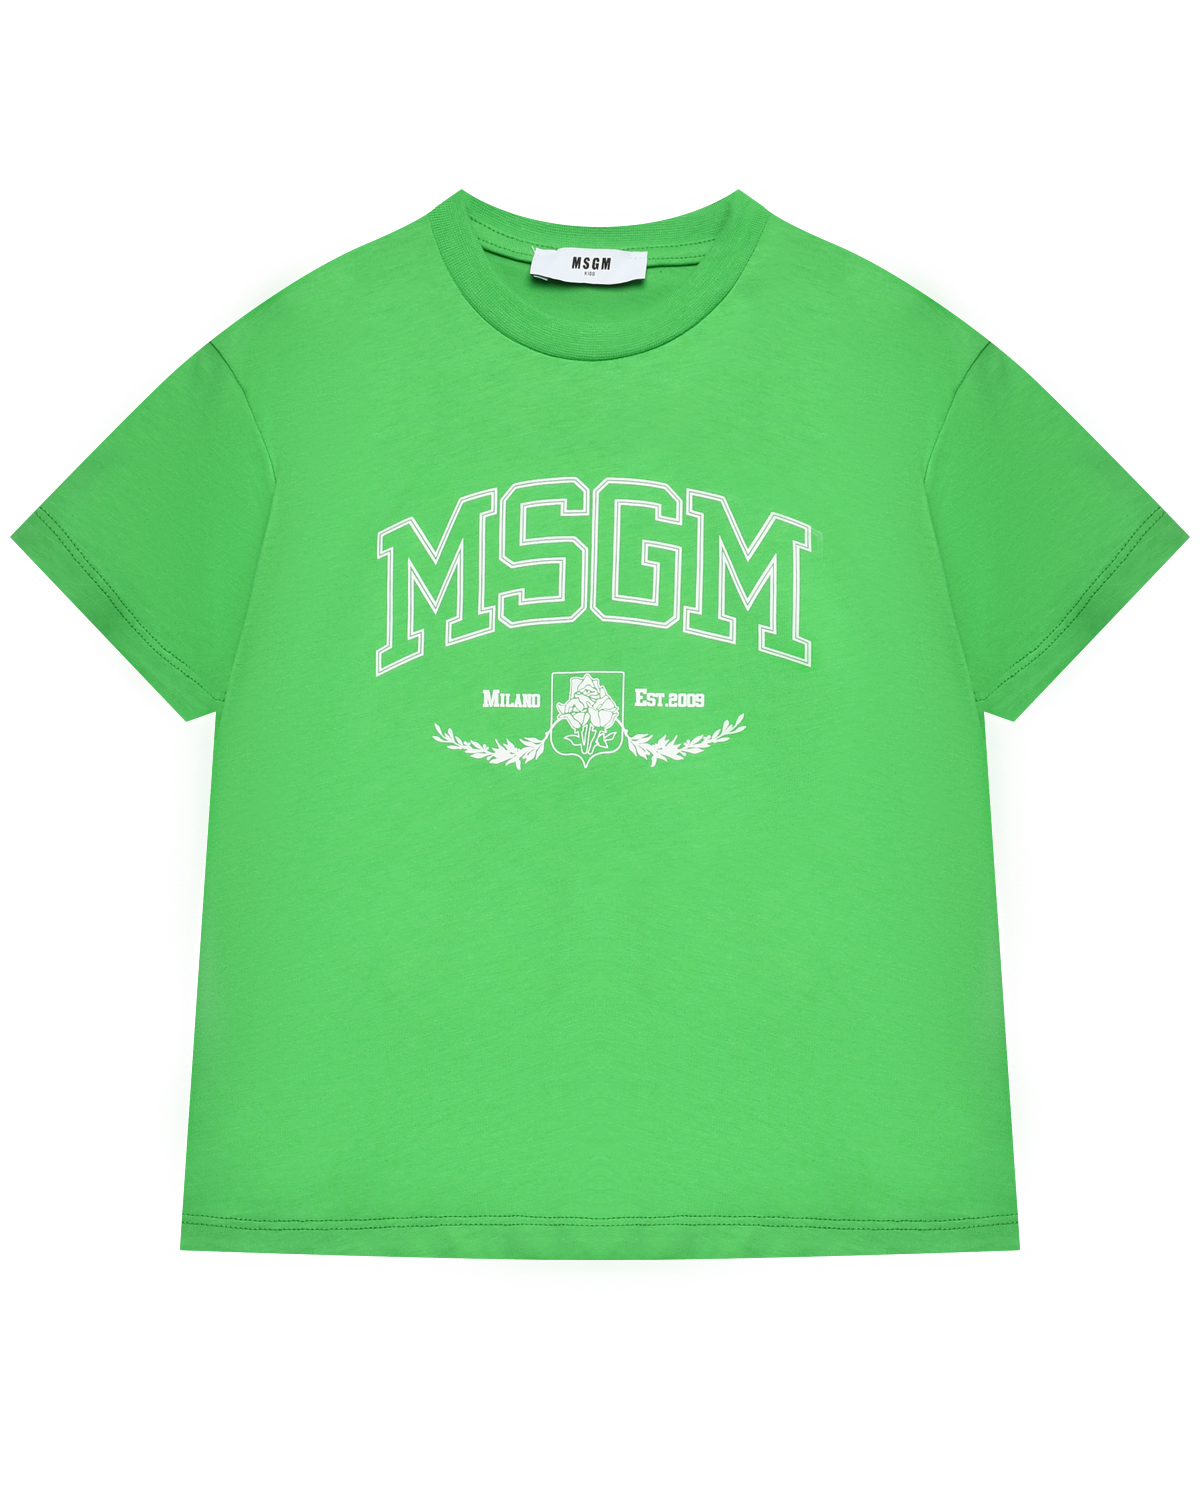 Футболка с логотипом, зеленая MSGM футболка для мальчиков зеленая с текстом принтом